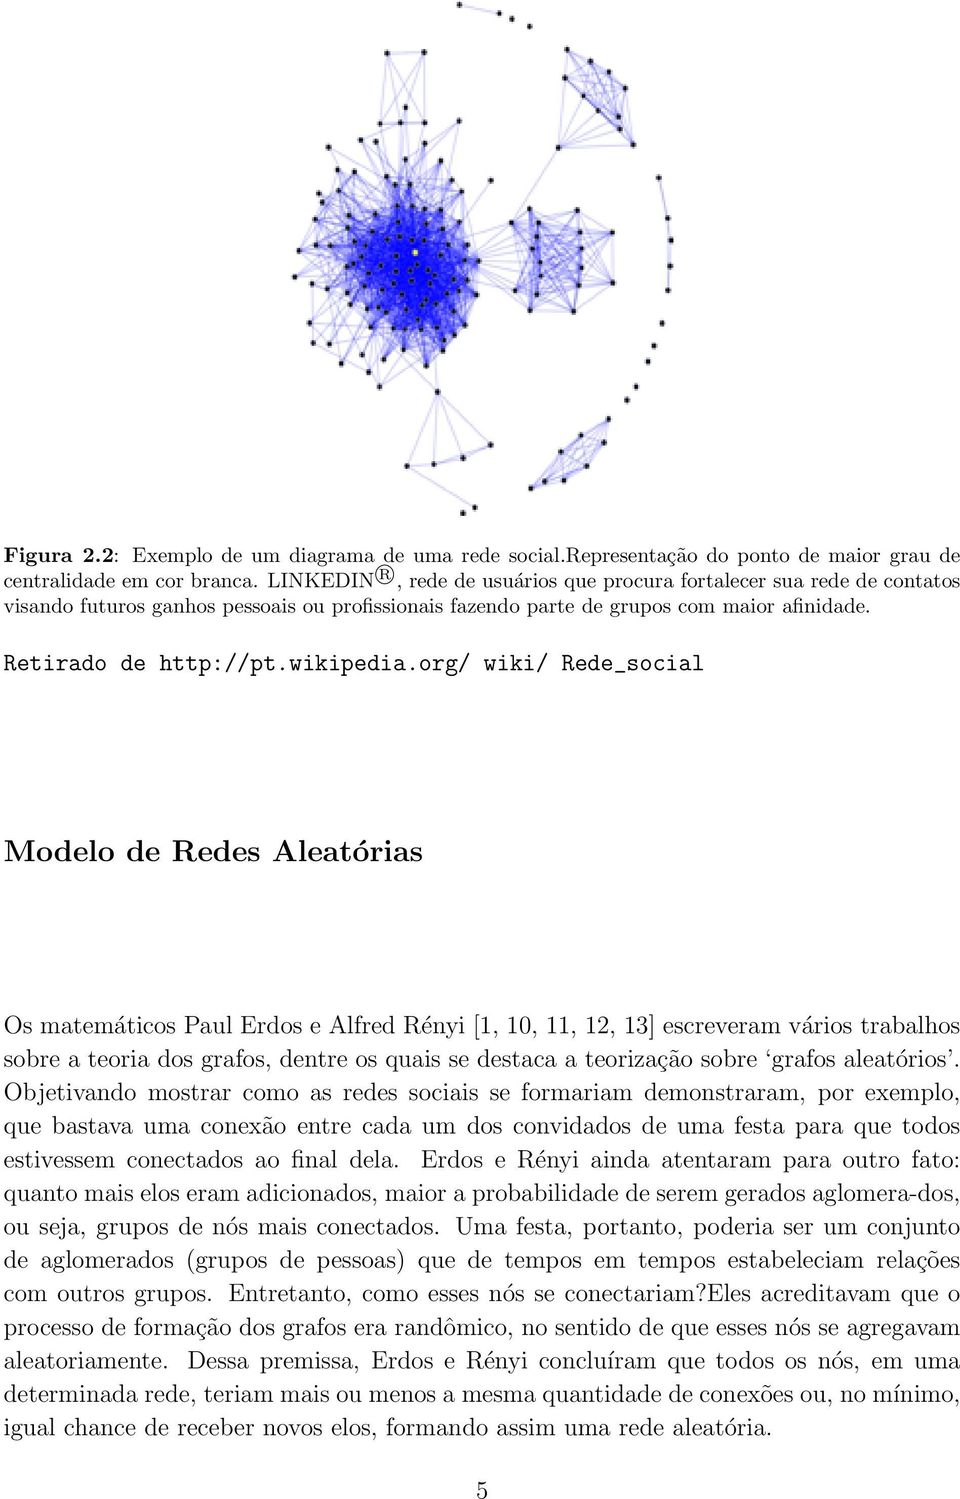 org/ wiki/ Rede_social Modelo de Redes Aleatórias Os matemáticos Paul Erdos e Alfred Rényi [1, 10, 11, 12, 13] escreveram vários trabalhos sobre a teoria dos grafos, dentre os quais se destaca a